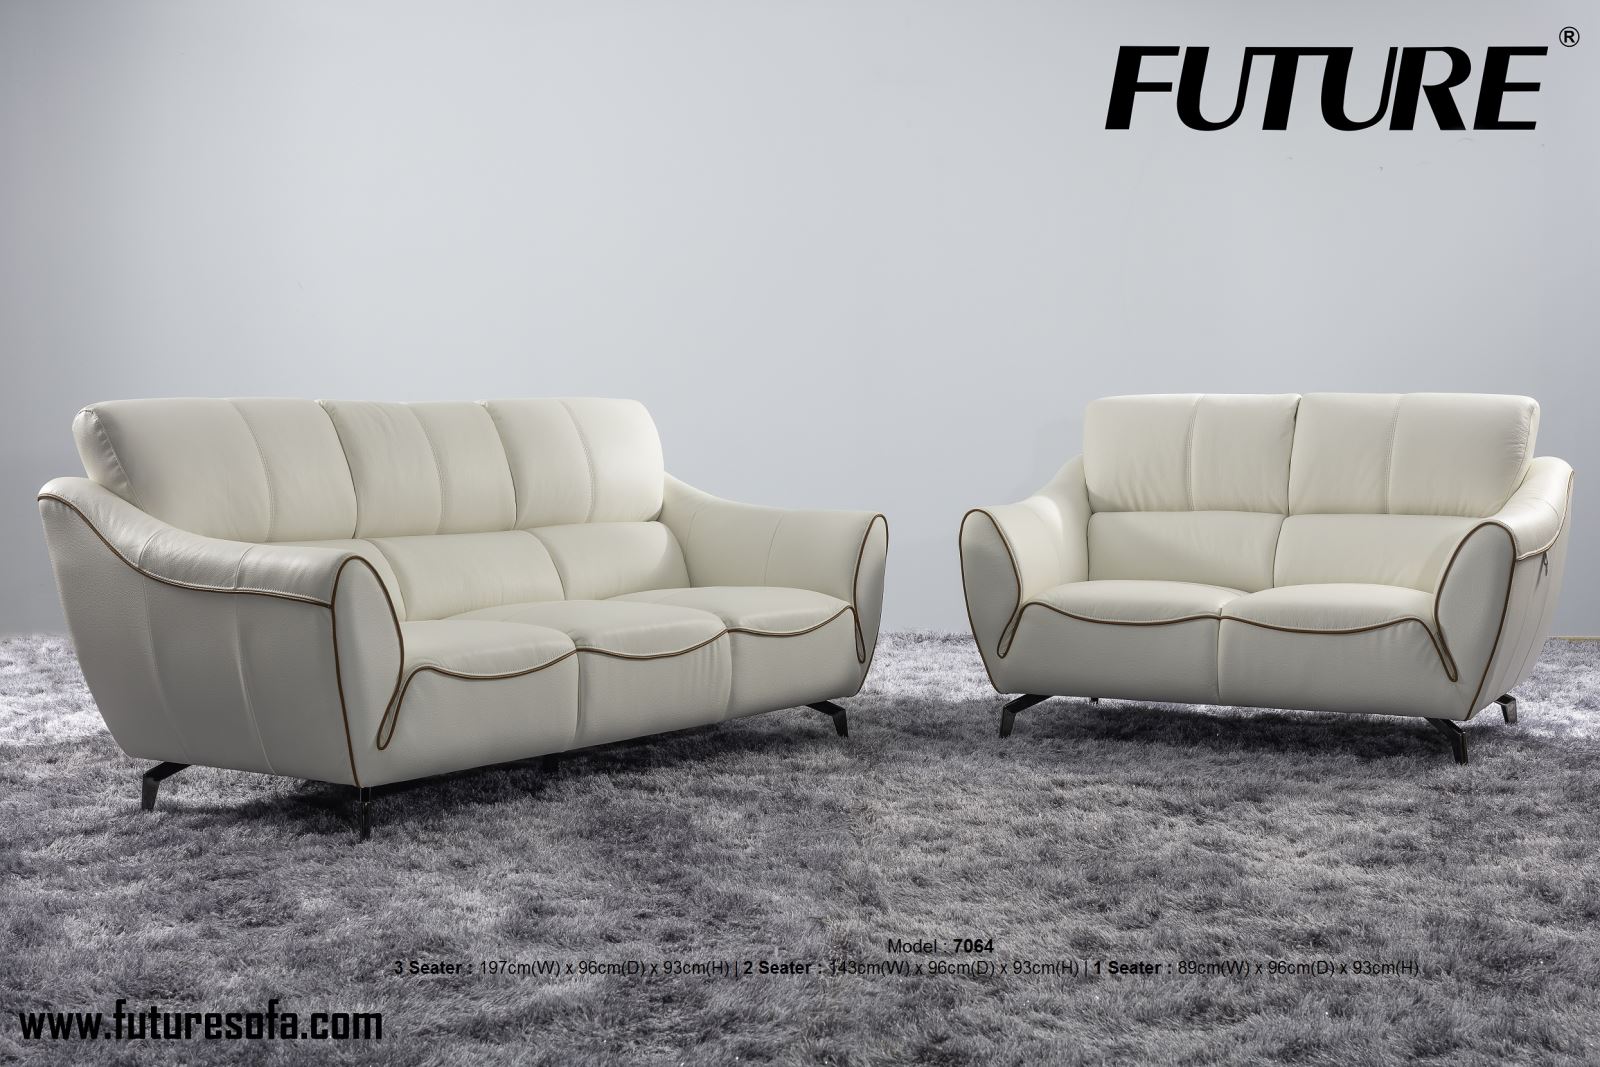 Ghế sofa da đẹp làm biến đổi hoàn toàn không gian sống của bạn - Ảnh 4